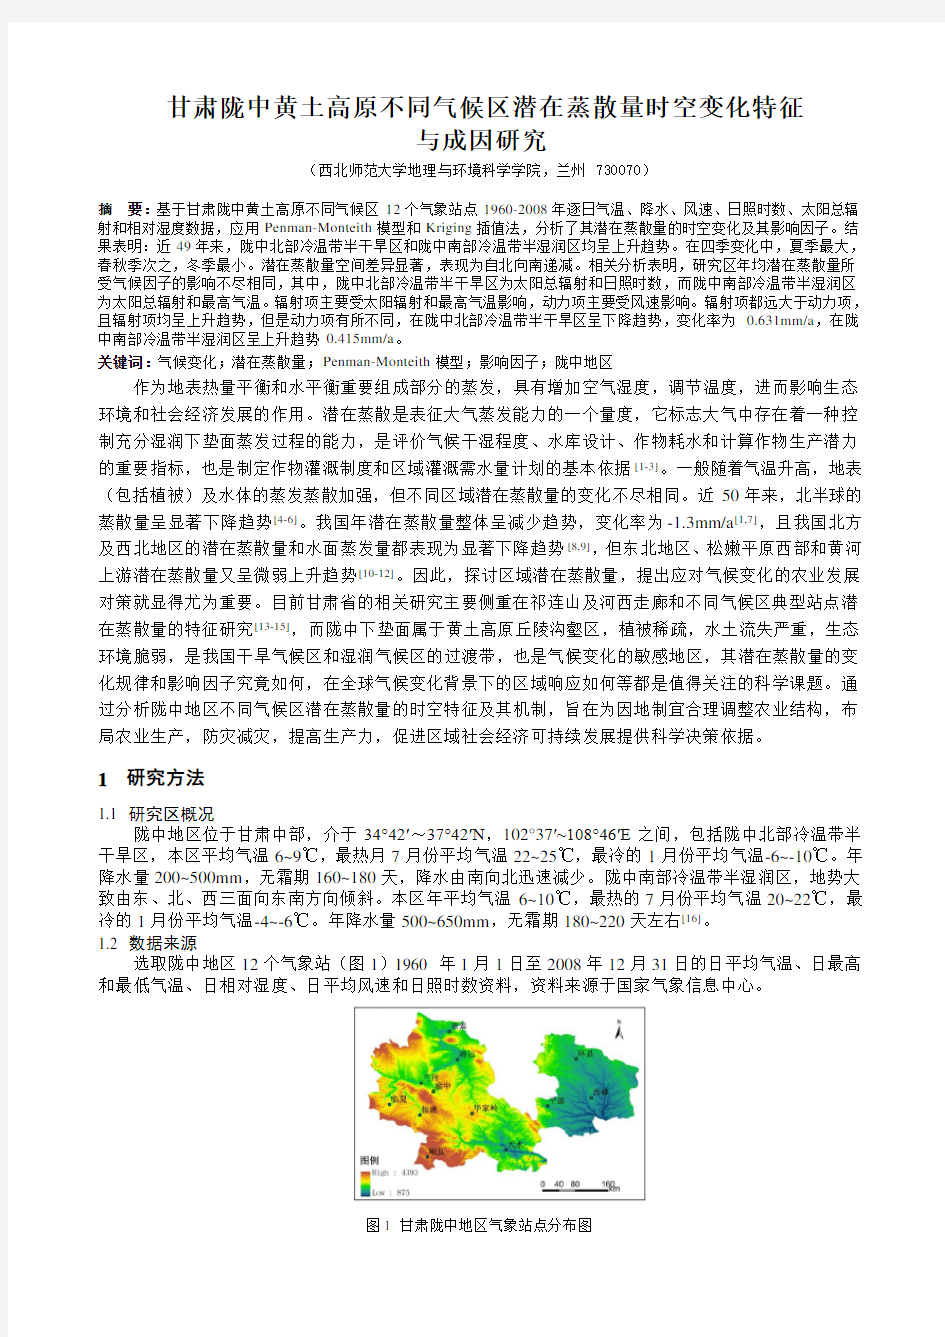 甘肃陇中黄土高原不同气候区潜在蒸散量时空变化特征